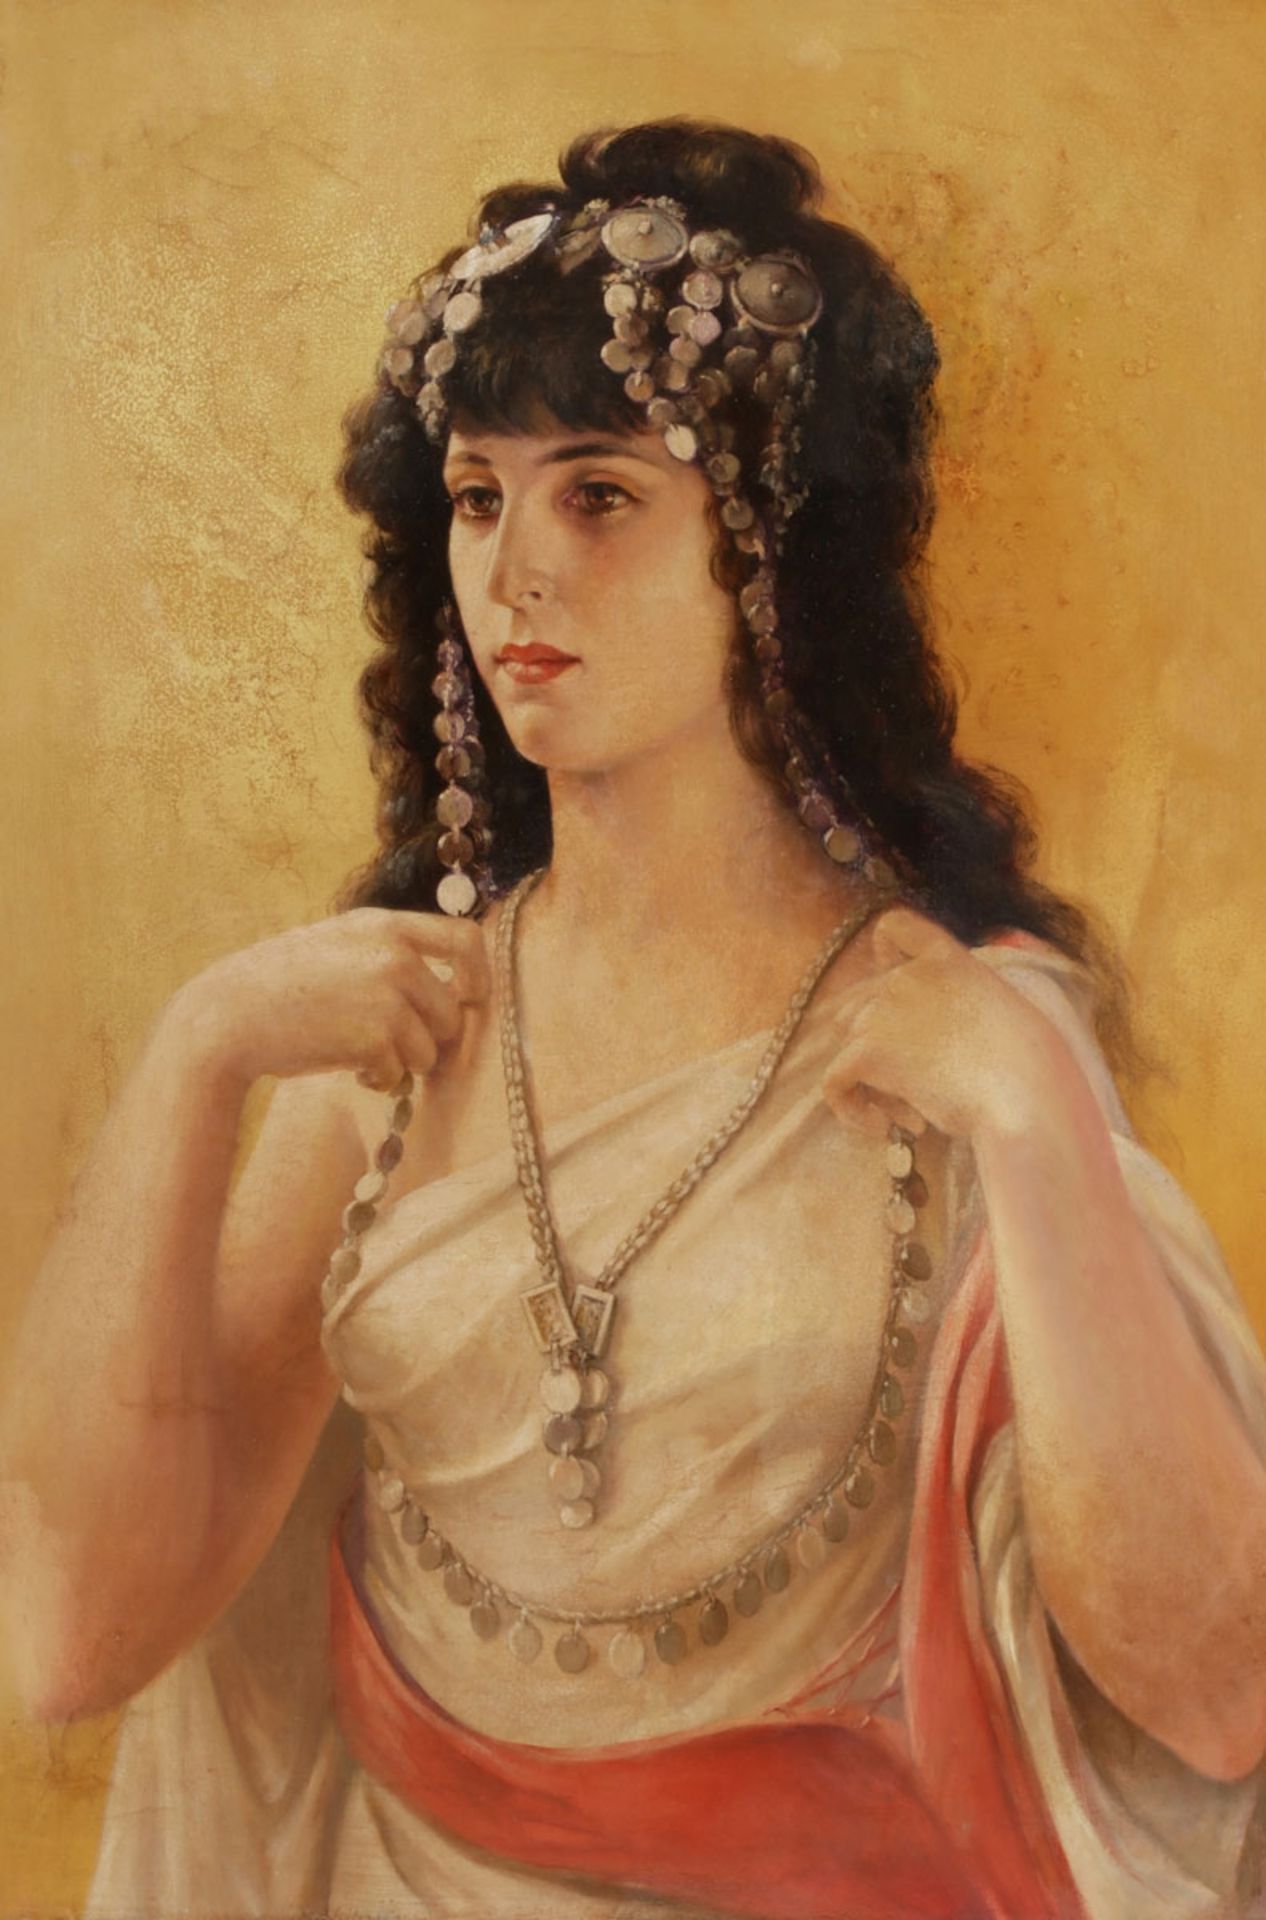 Künstler des 19. Jahrhunderts- Junge Frau in orientalischer Tracht - Öl/Lwd. 85,5 x 60 cm.